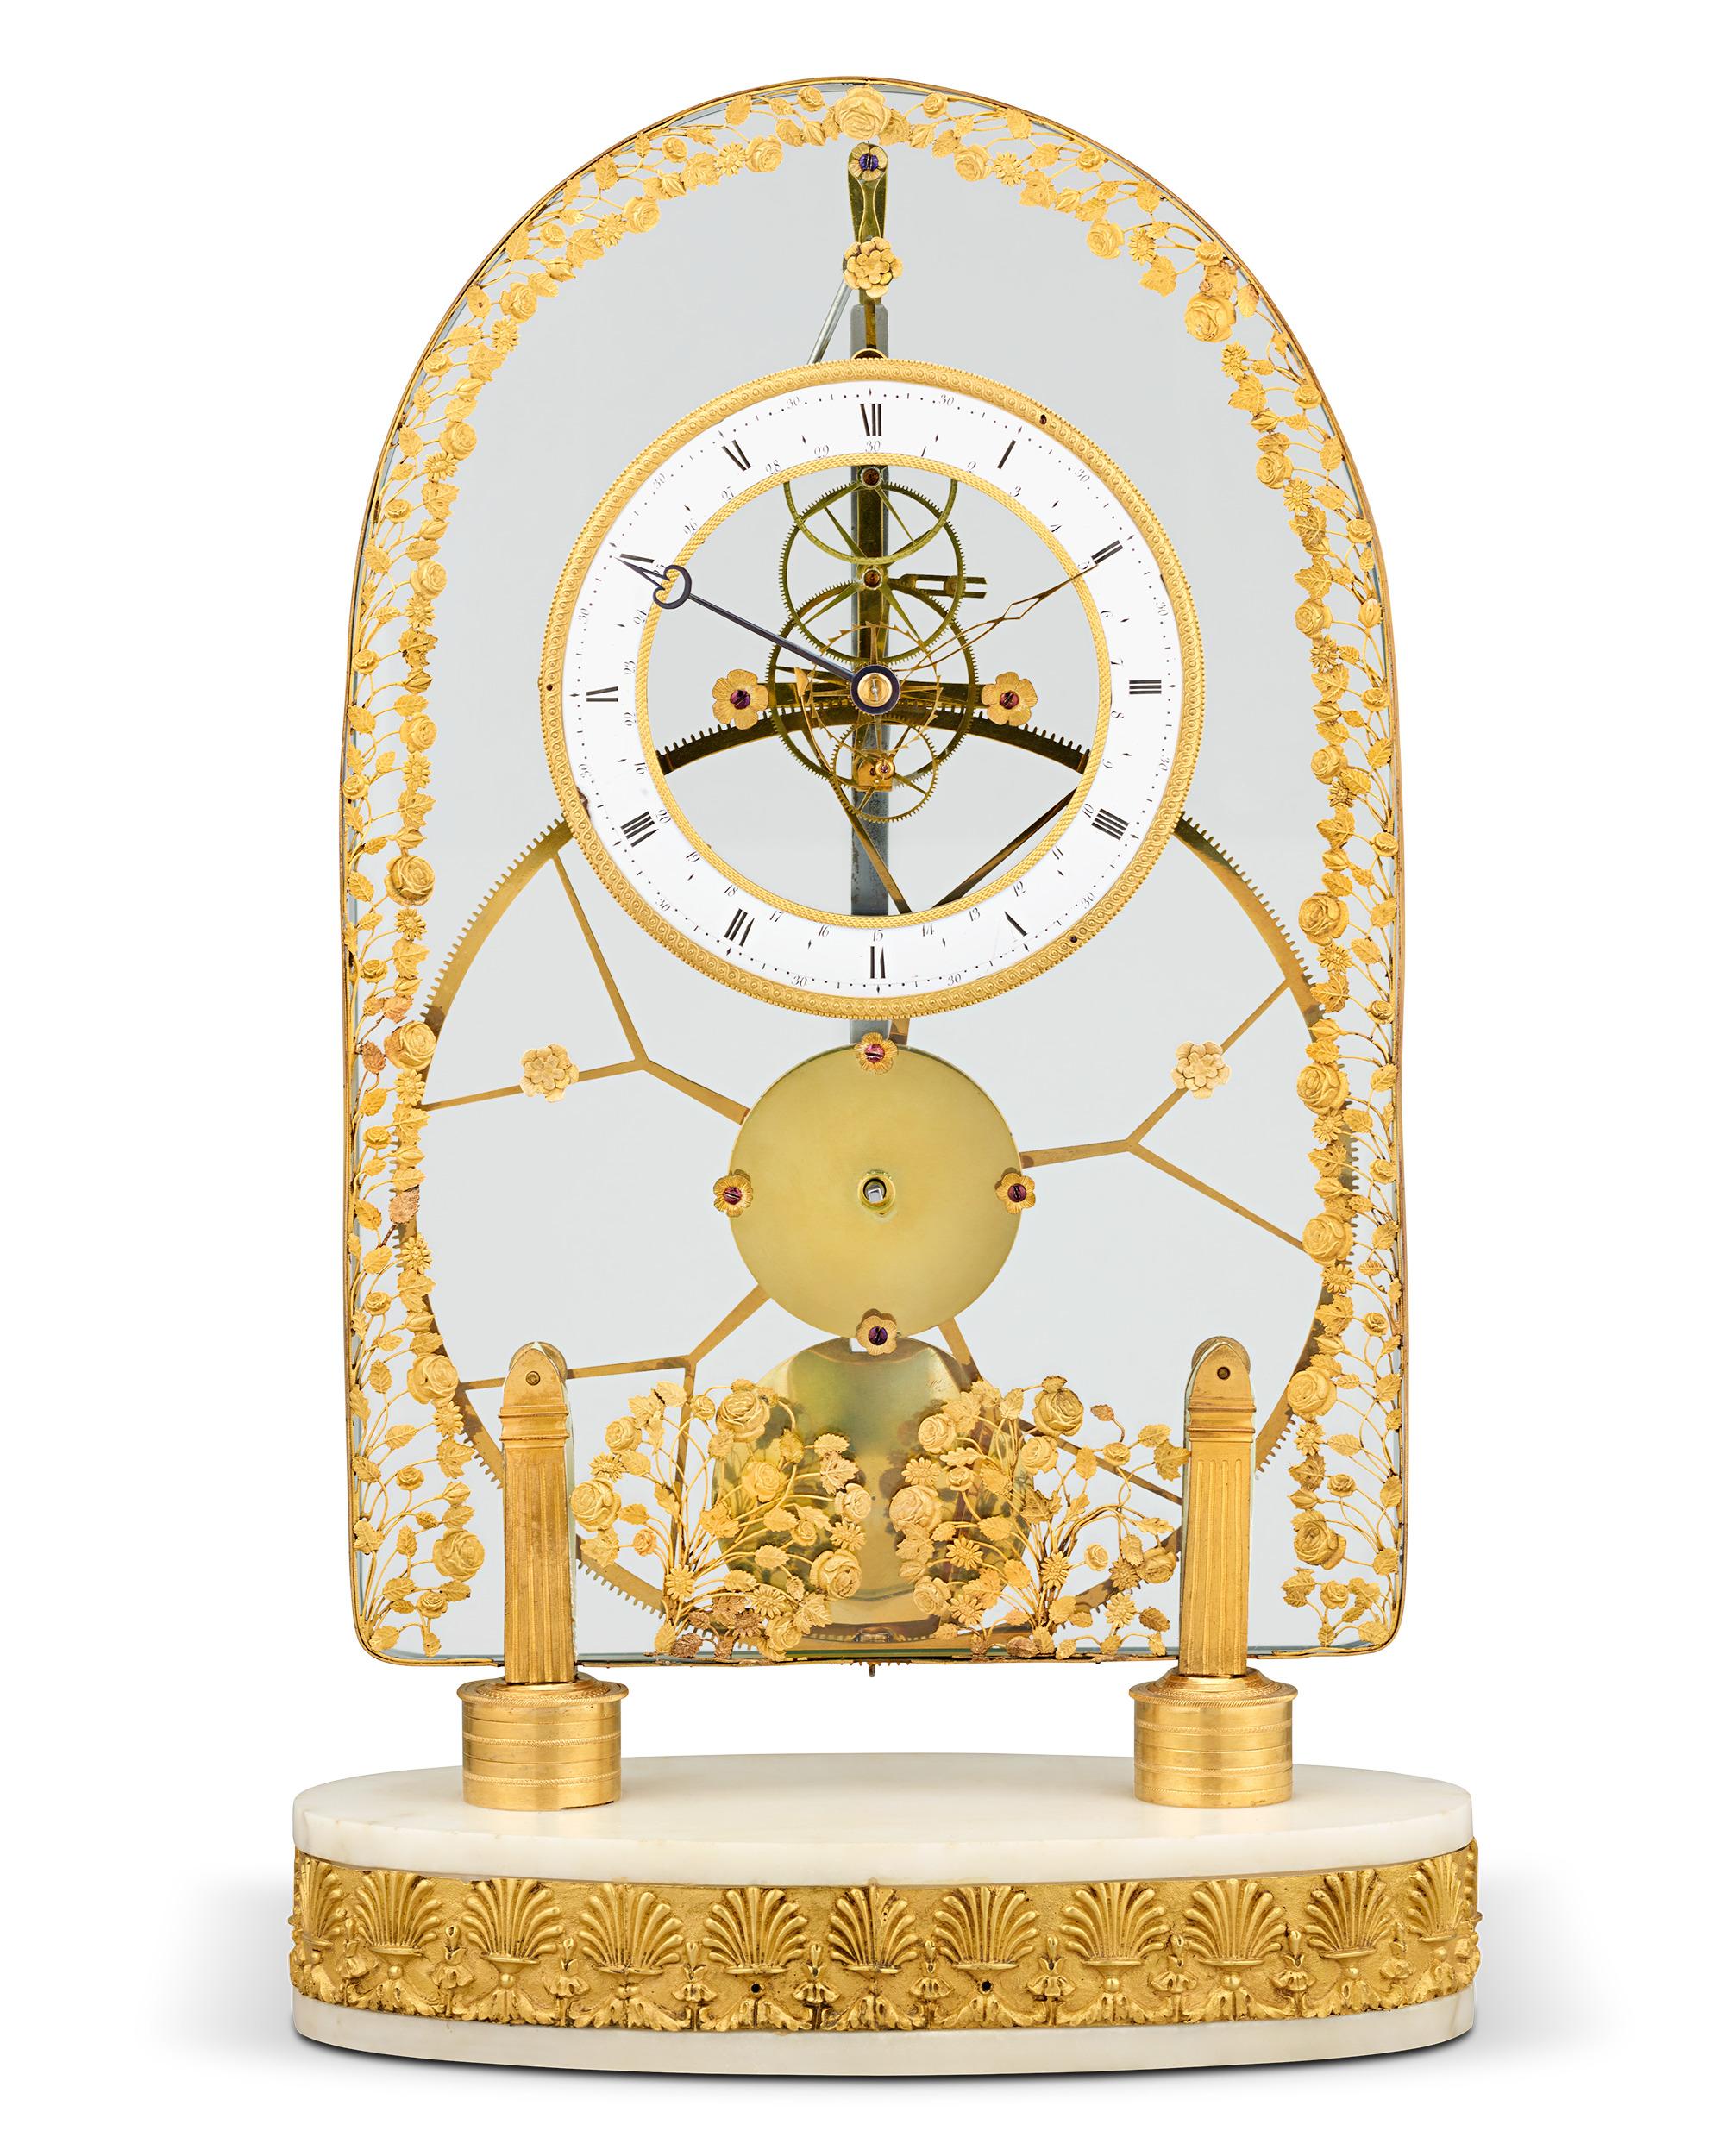 Cette importante horloge squelette à grande roue de l'Empire français a la remarquable capacité de fonctionner avec une incroyable précision pendant plus d'une semaine avec un seul remontage. La grande roue centrale et la rare combinaison de